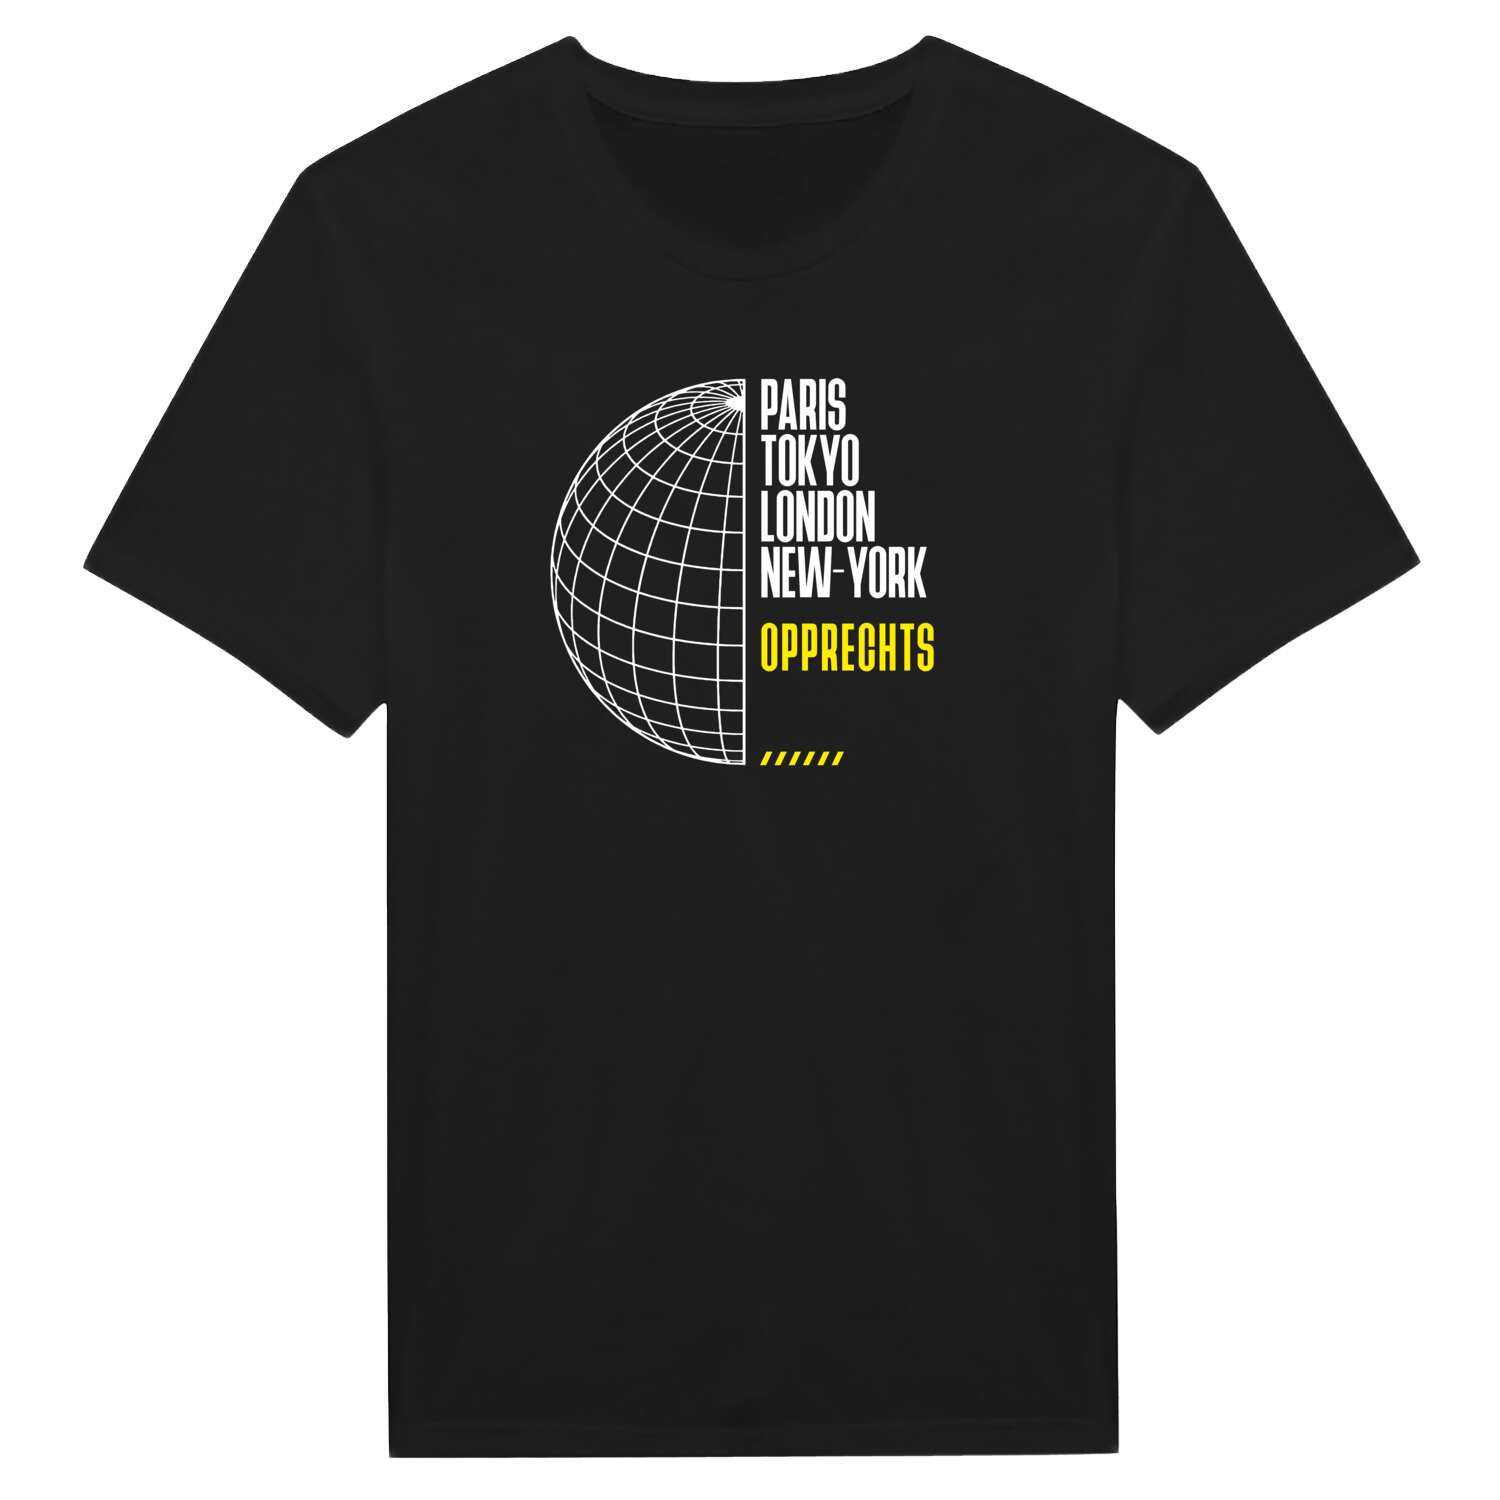 Opprechts T-Shirt »Paris Tokyo London«